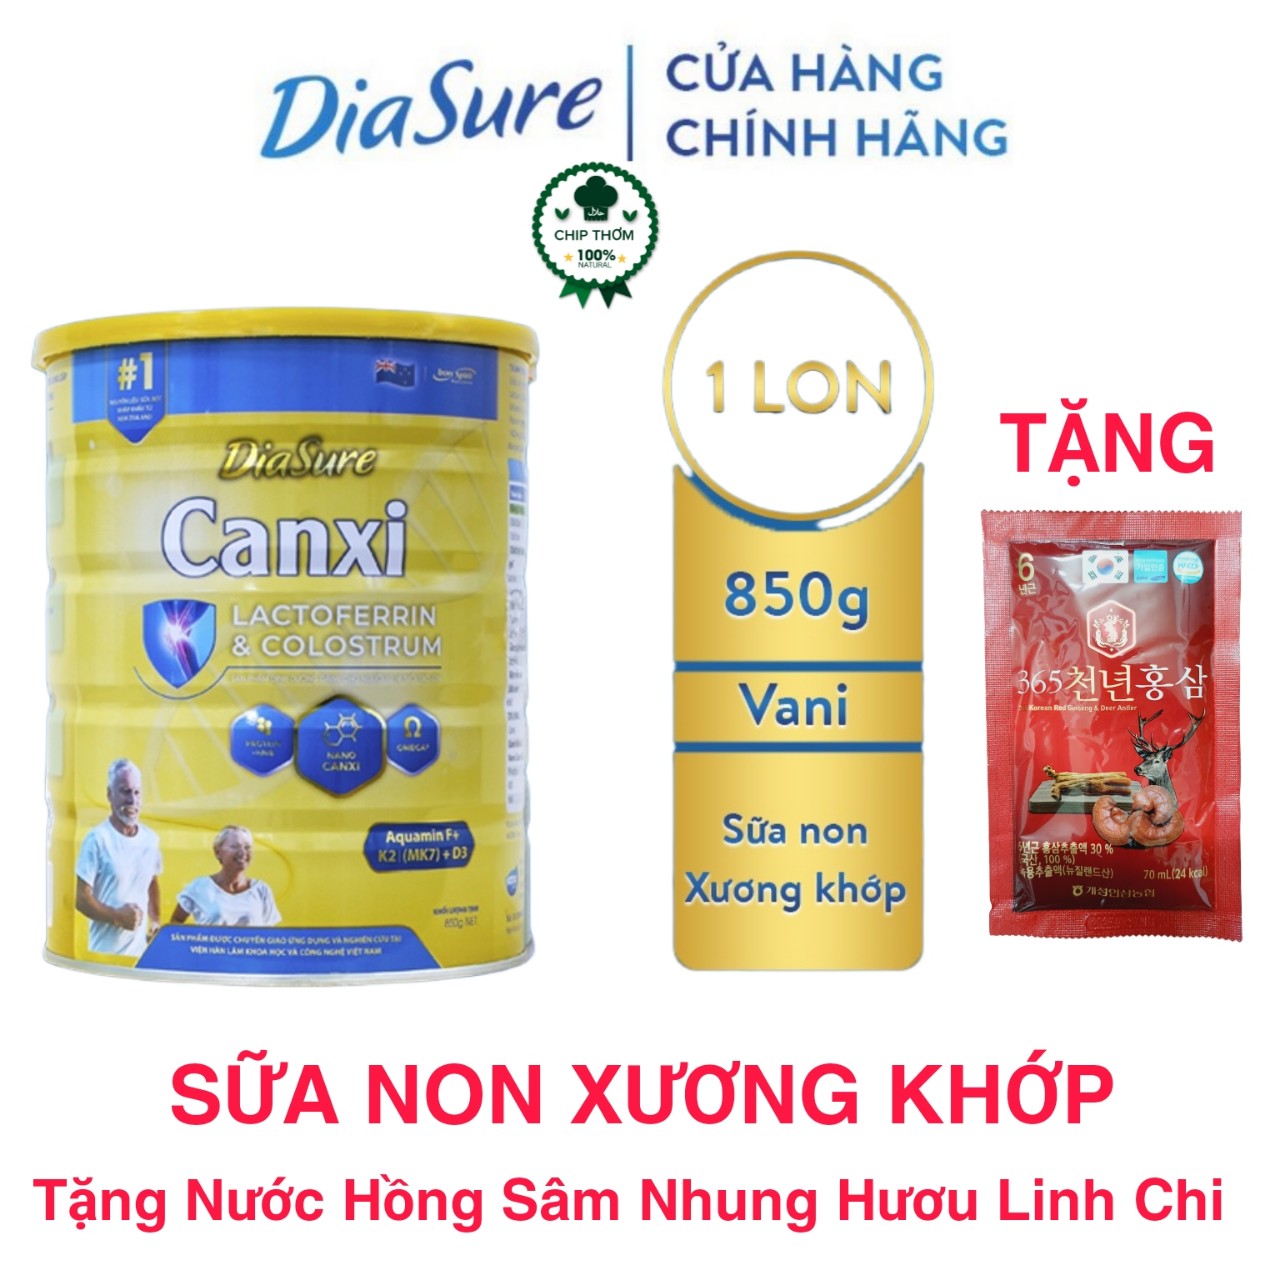 Sữa Diasure Canxi lon 850g - Hàng Chính Hãng Date Mới - phòng chống loãng xương cải thiện xương khớp